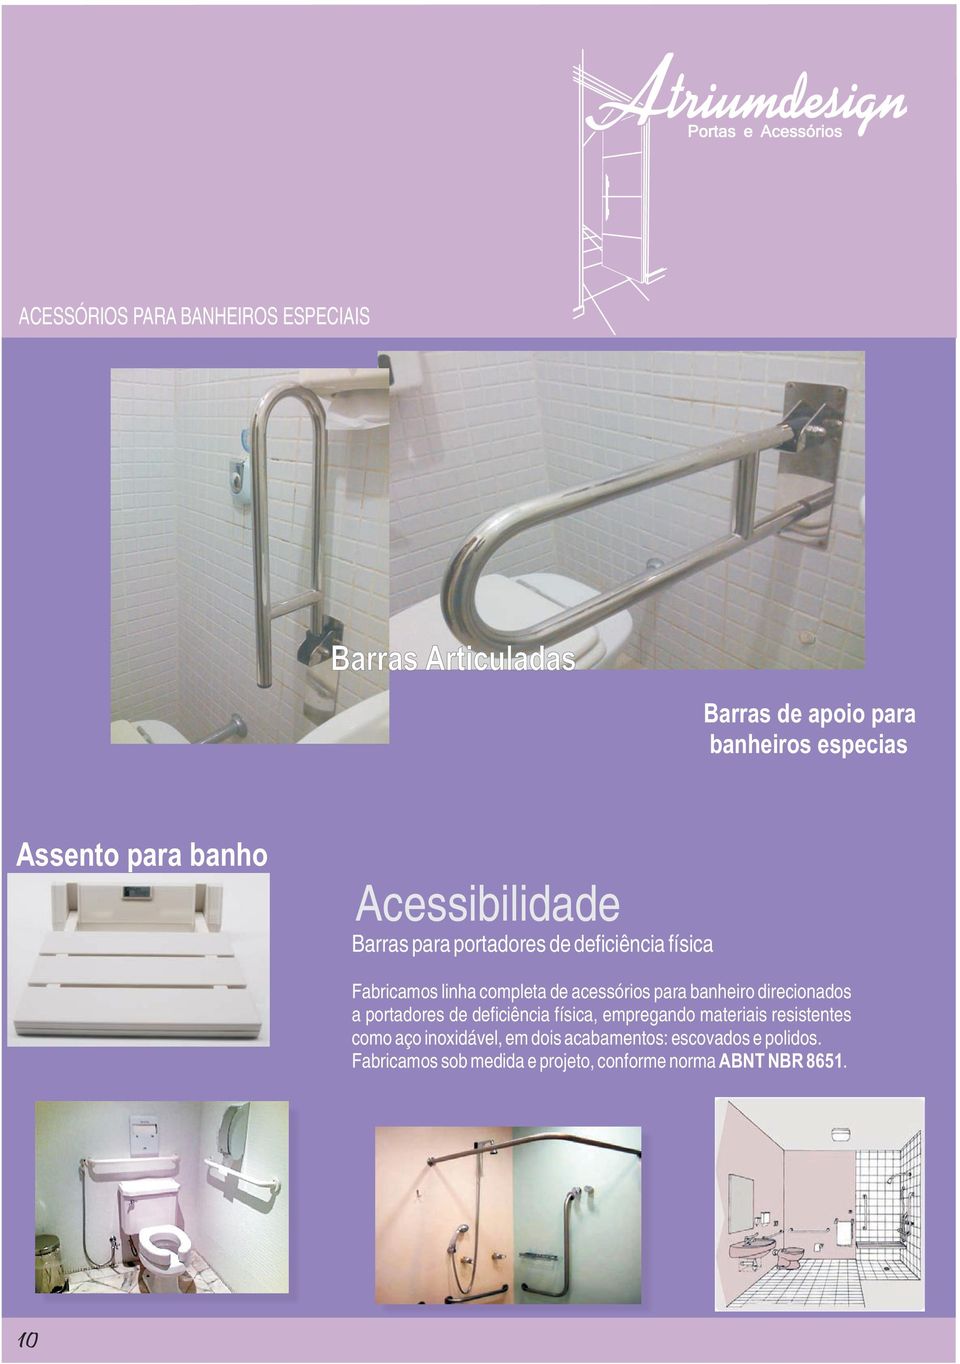 para banheiro direcionados a portadores de deficiência física, empregando materiais resistentes como aço